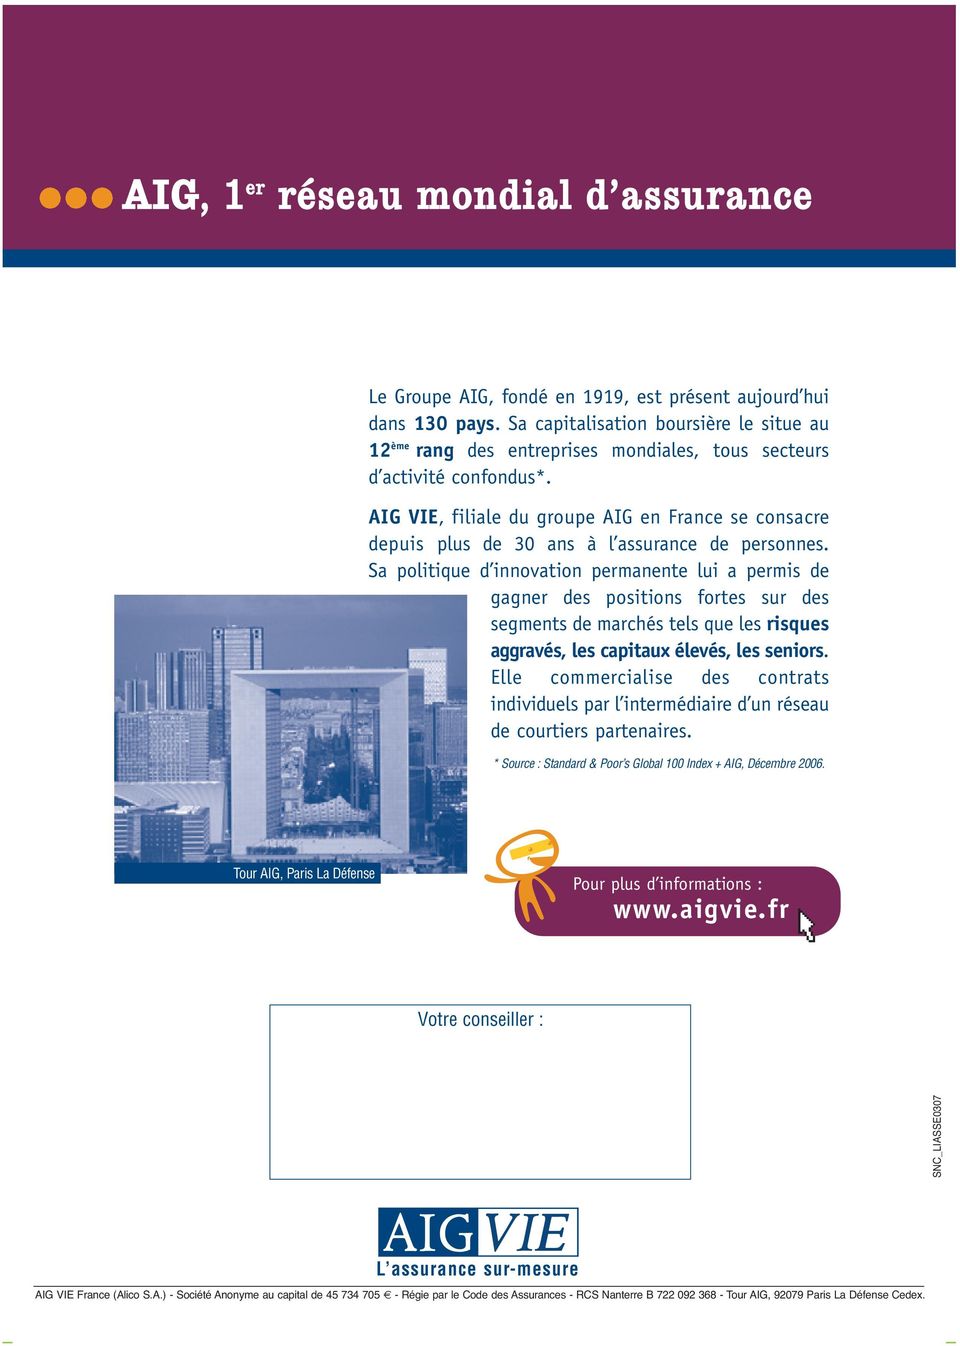 AIG VIE, filiale du groupe AIG en France se consacre depuis plus de 30 ans à l assurance de personnes.